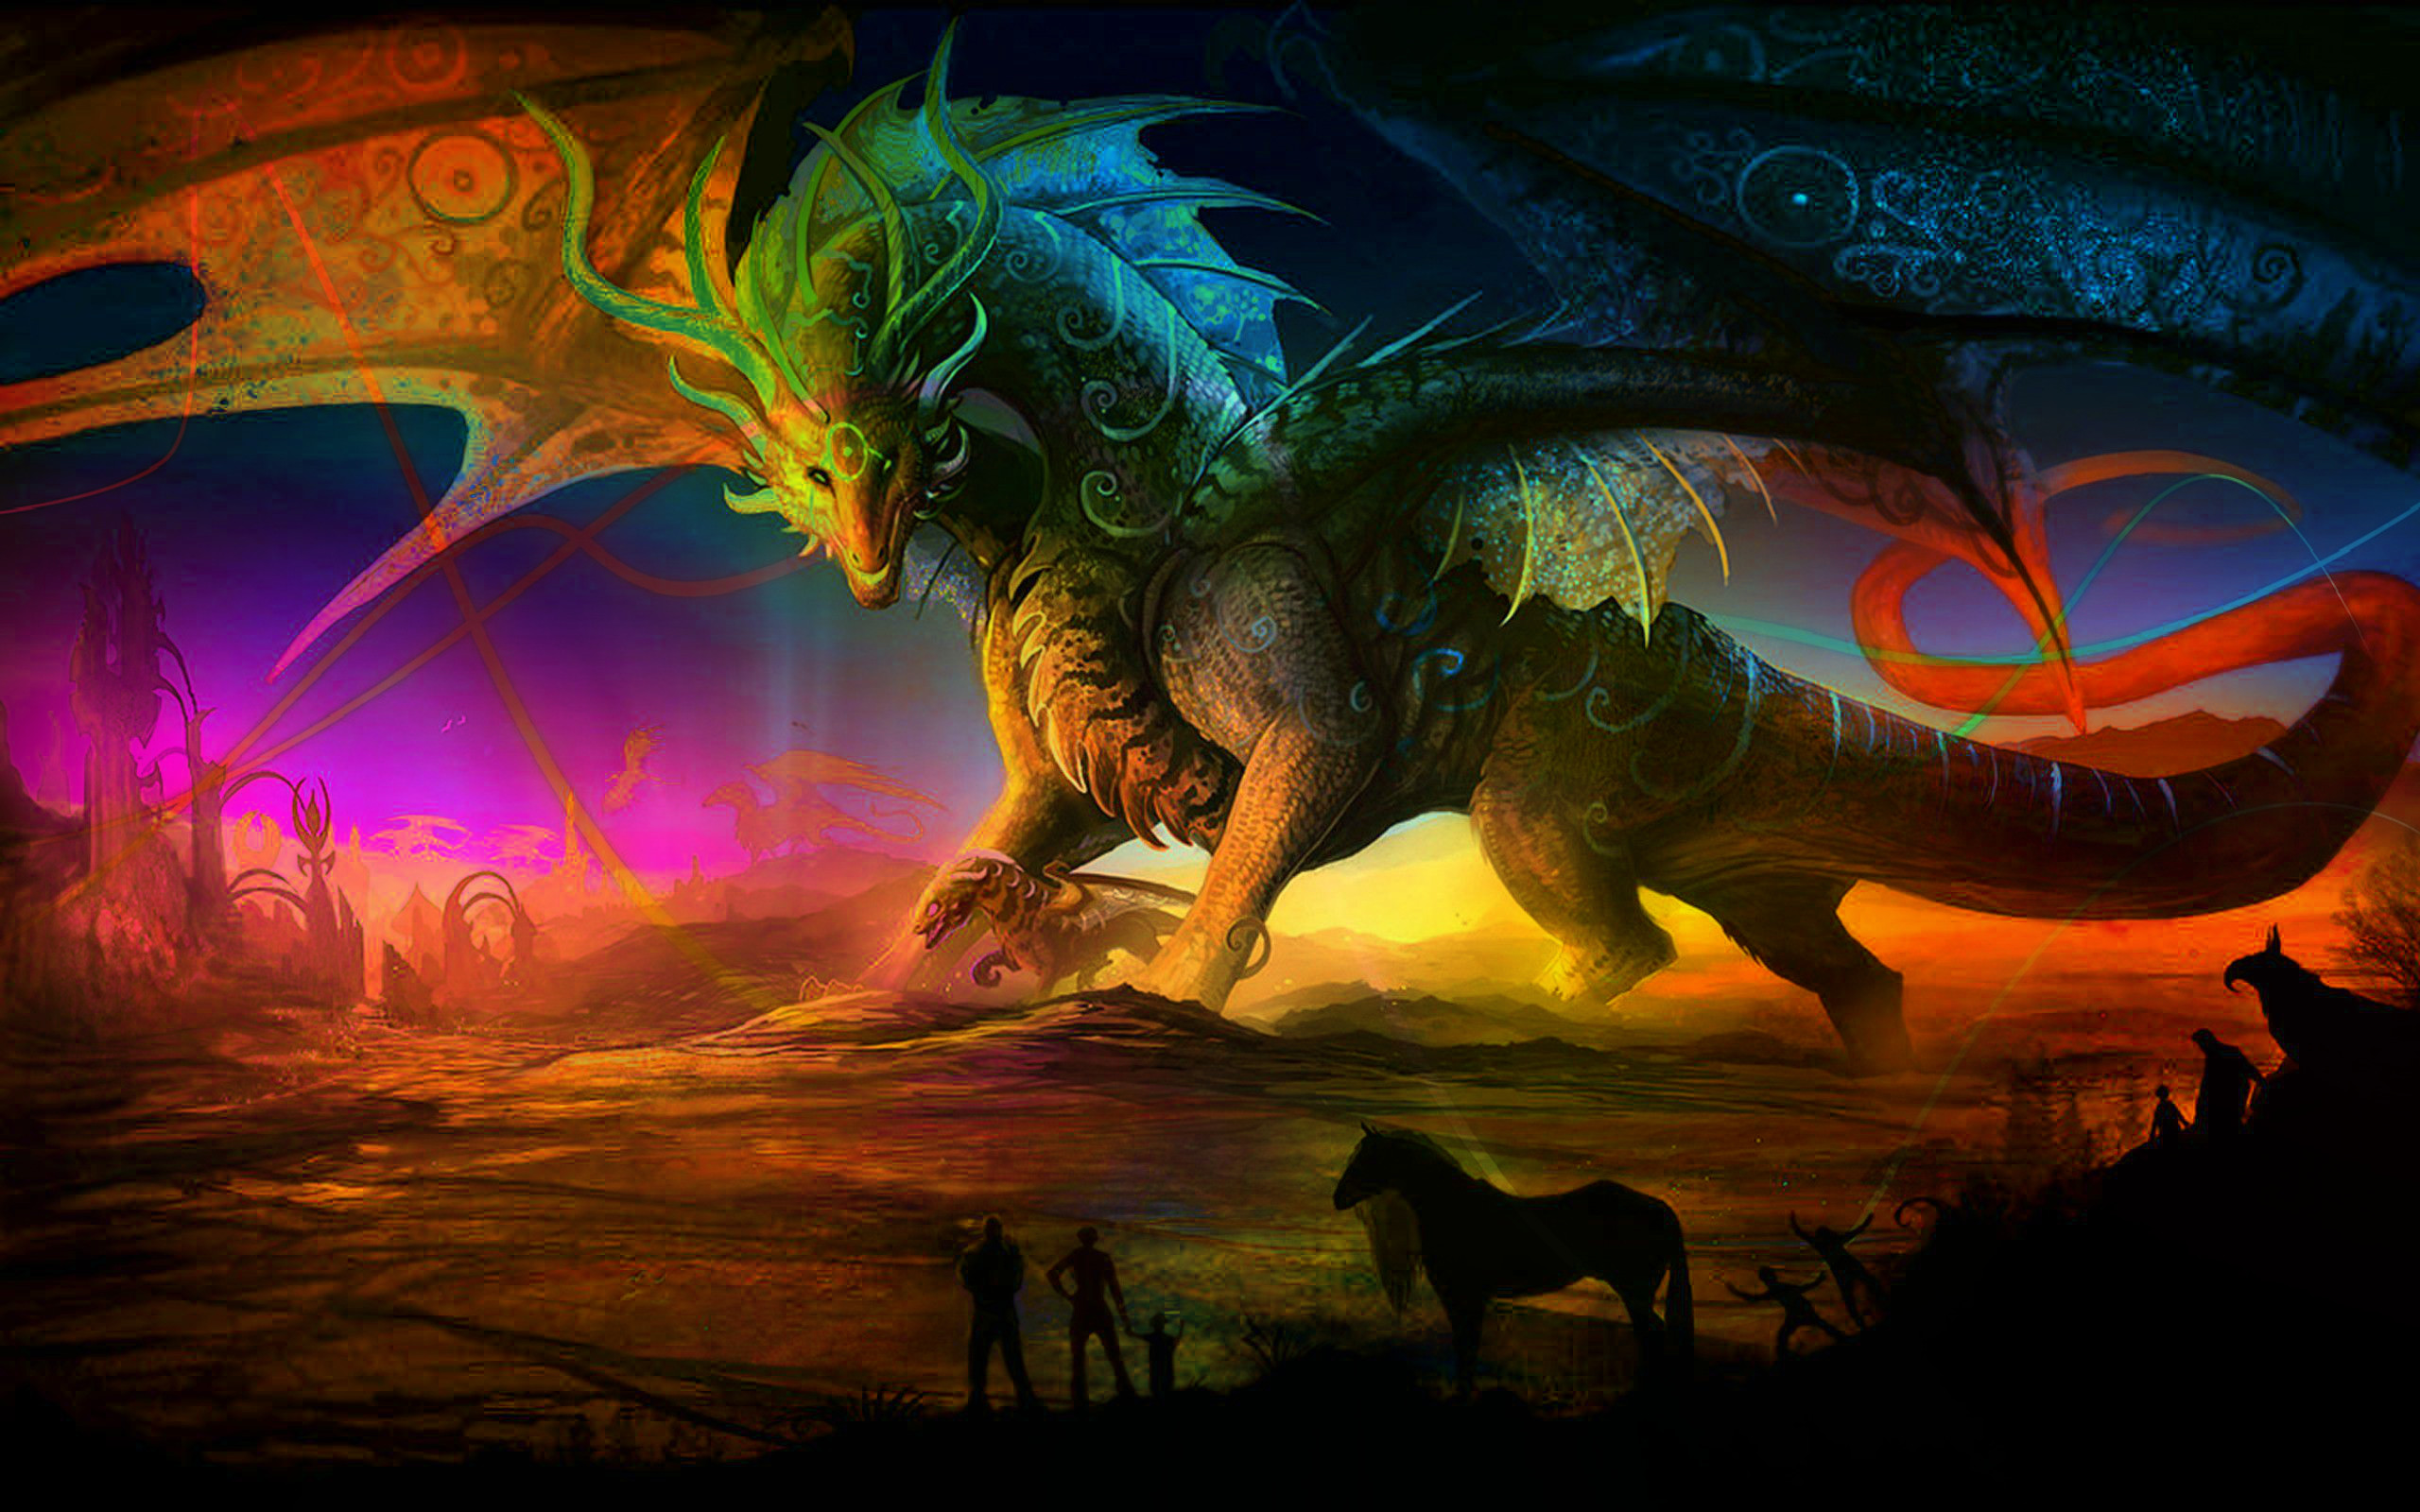 fond d'écran dragon,dragon,personnage fictif,oeuvre de cg,dinosaure,créature mythique